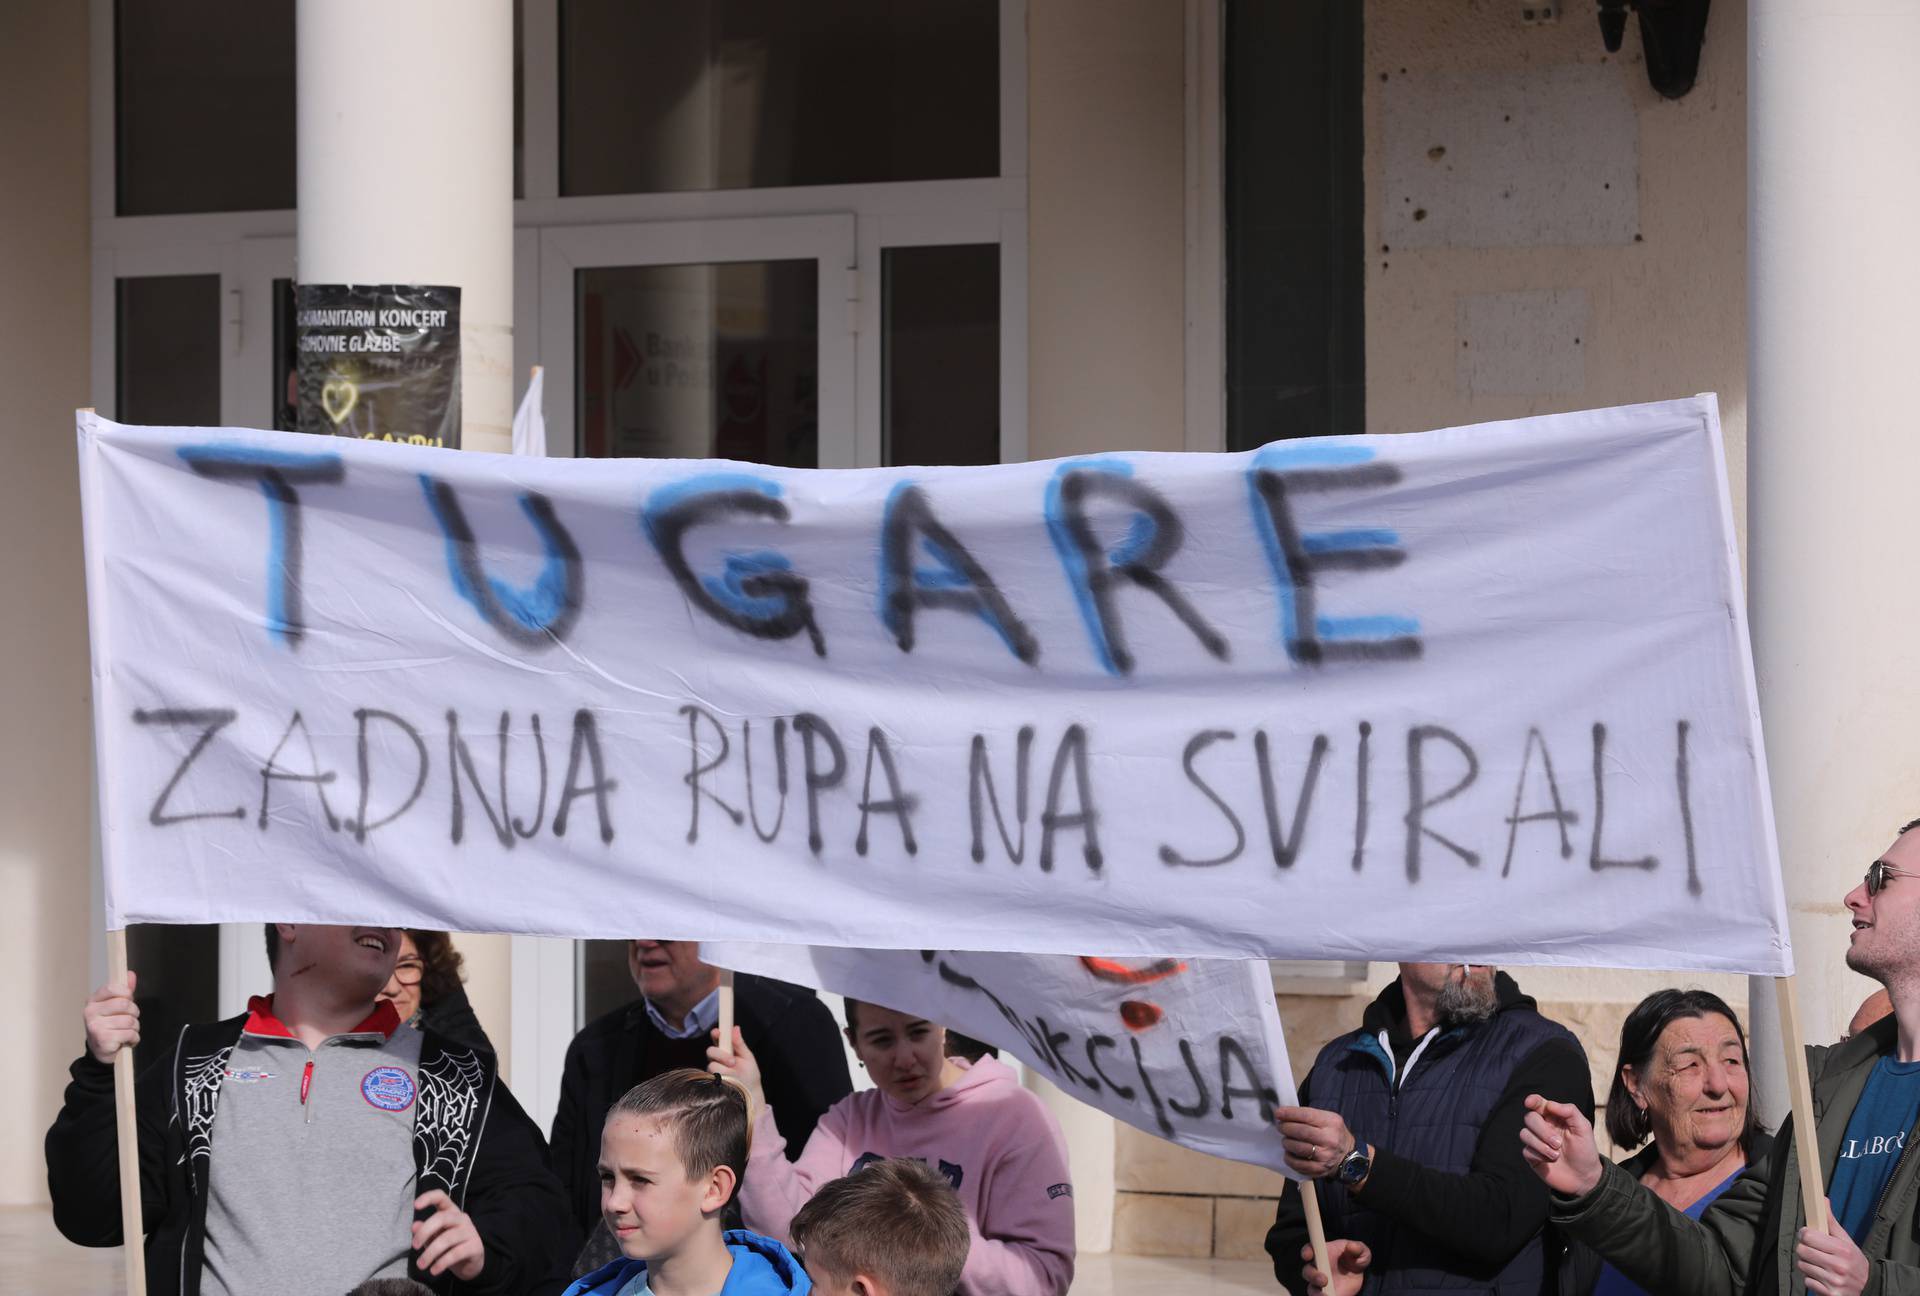 Mještani Tugara nezadovoljni zbog mogućih problema s mostom preko Cetine